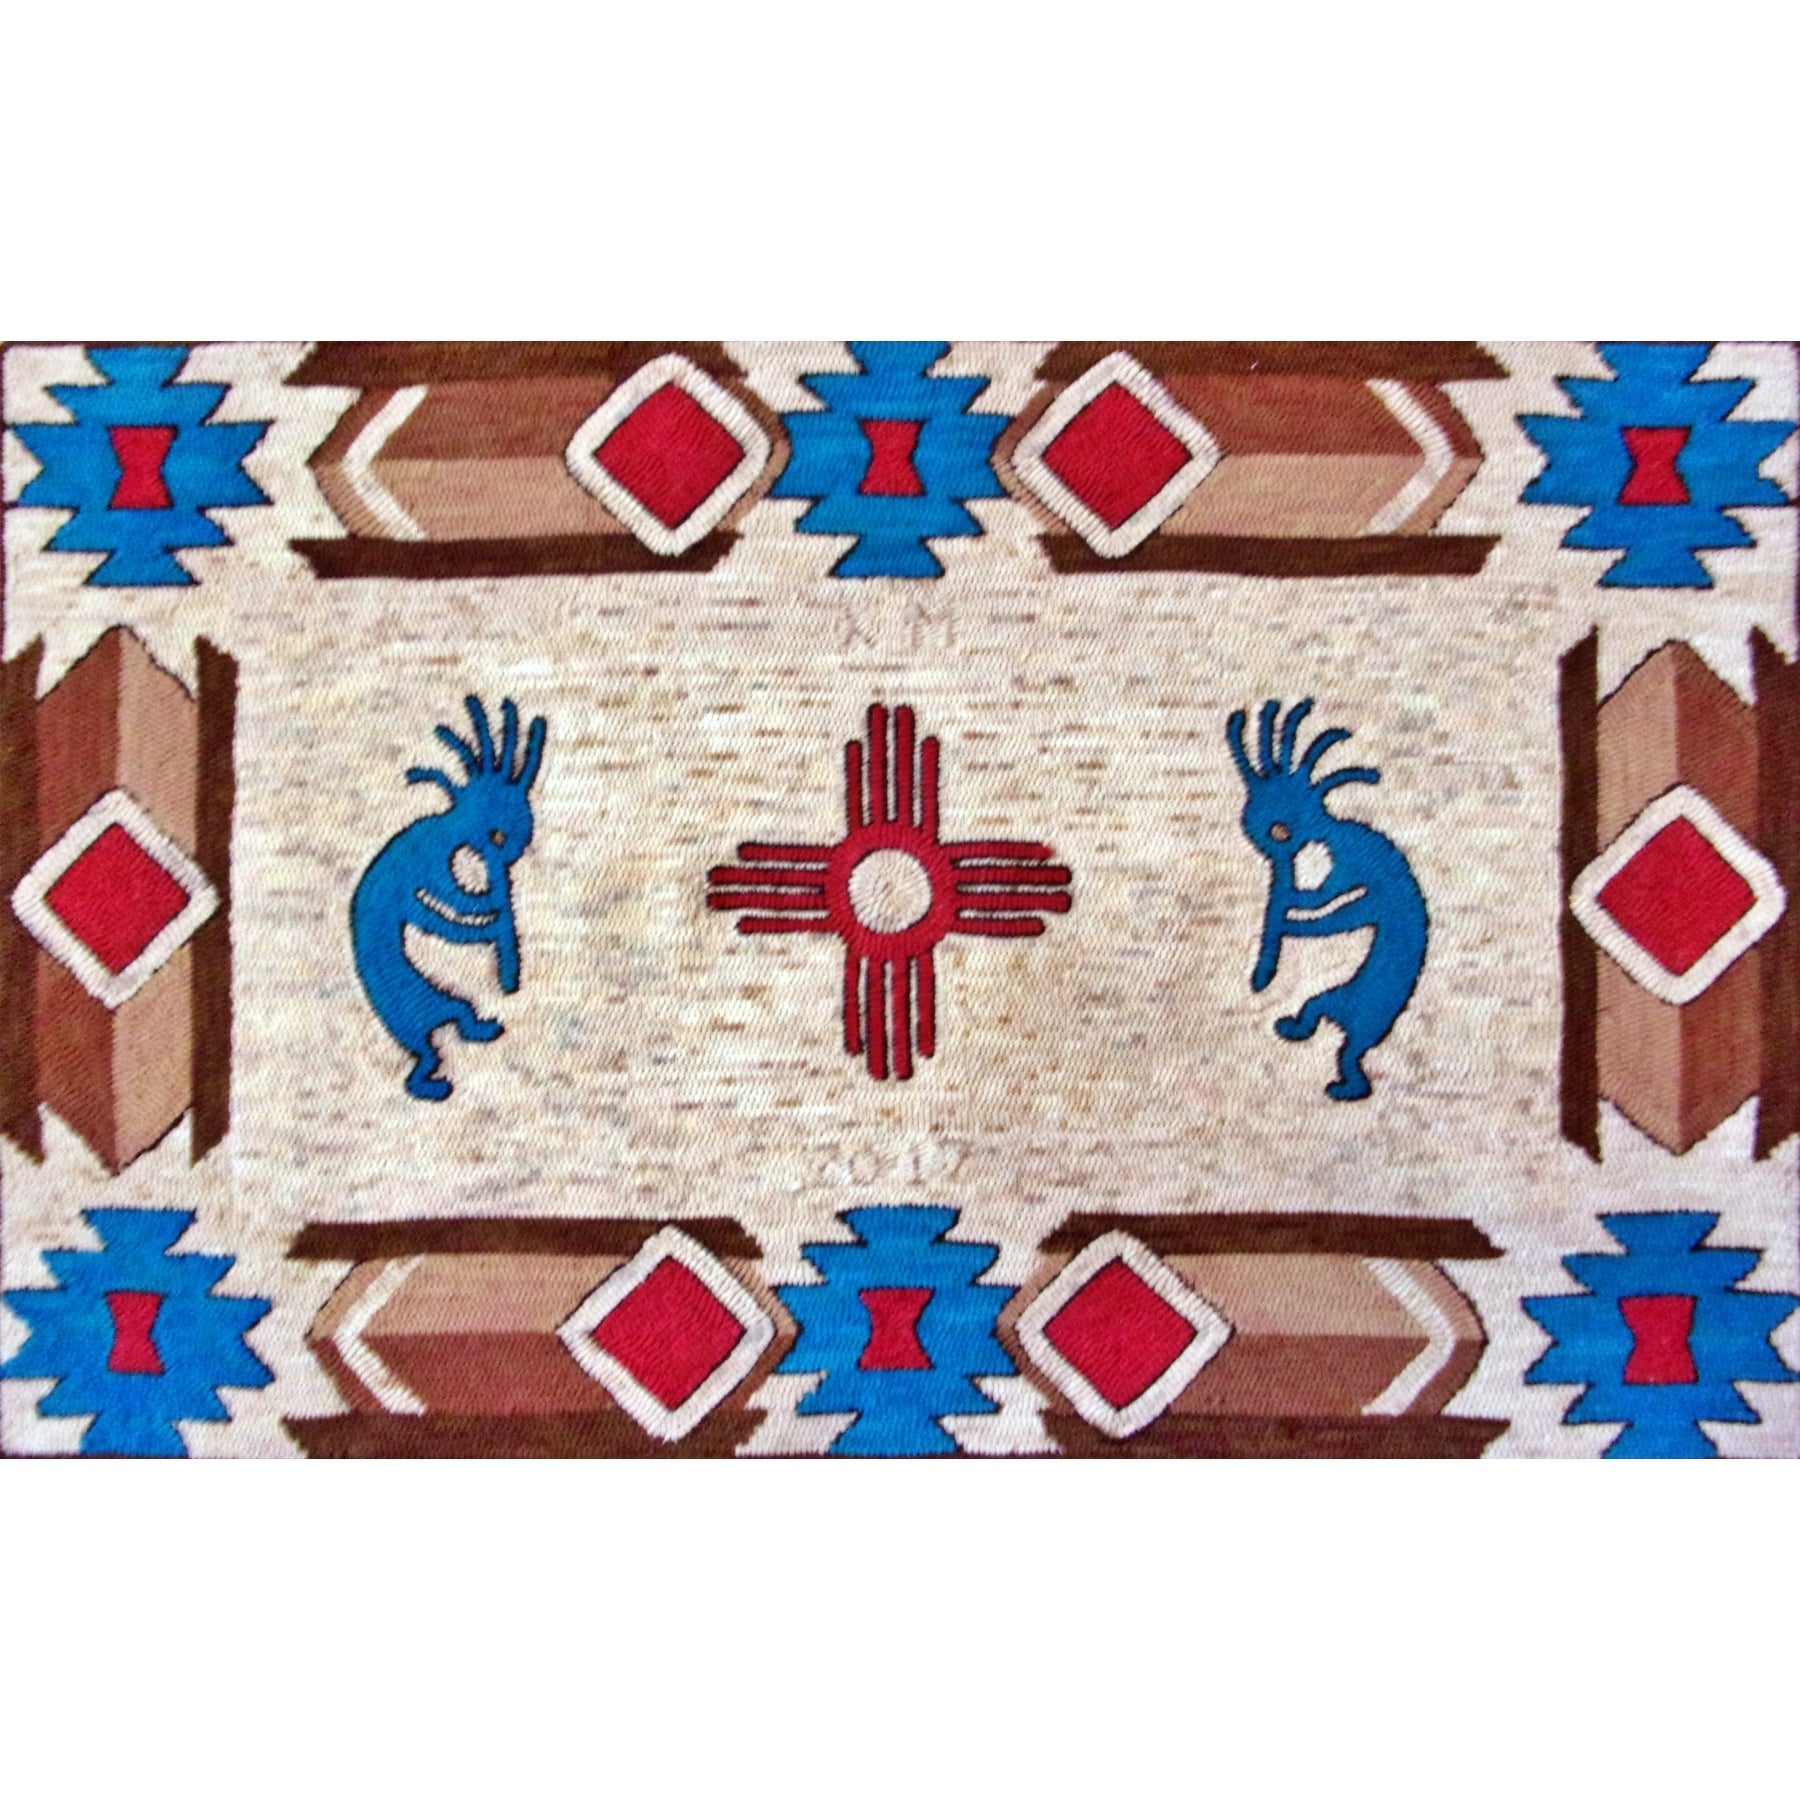 Native Song, rug hooked by Sondra Kellar